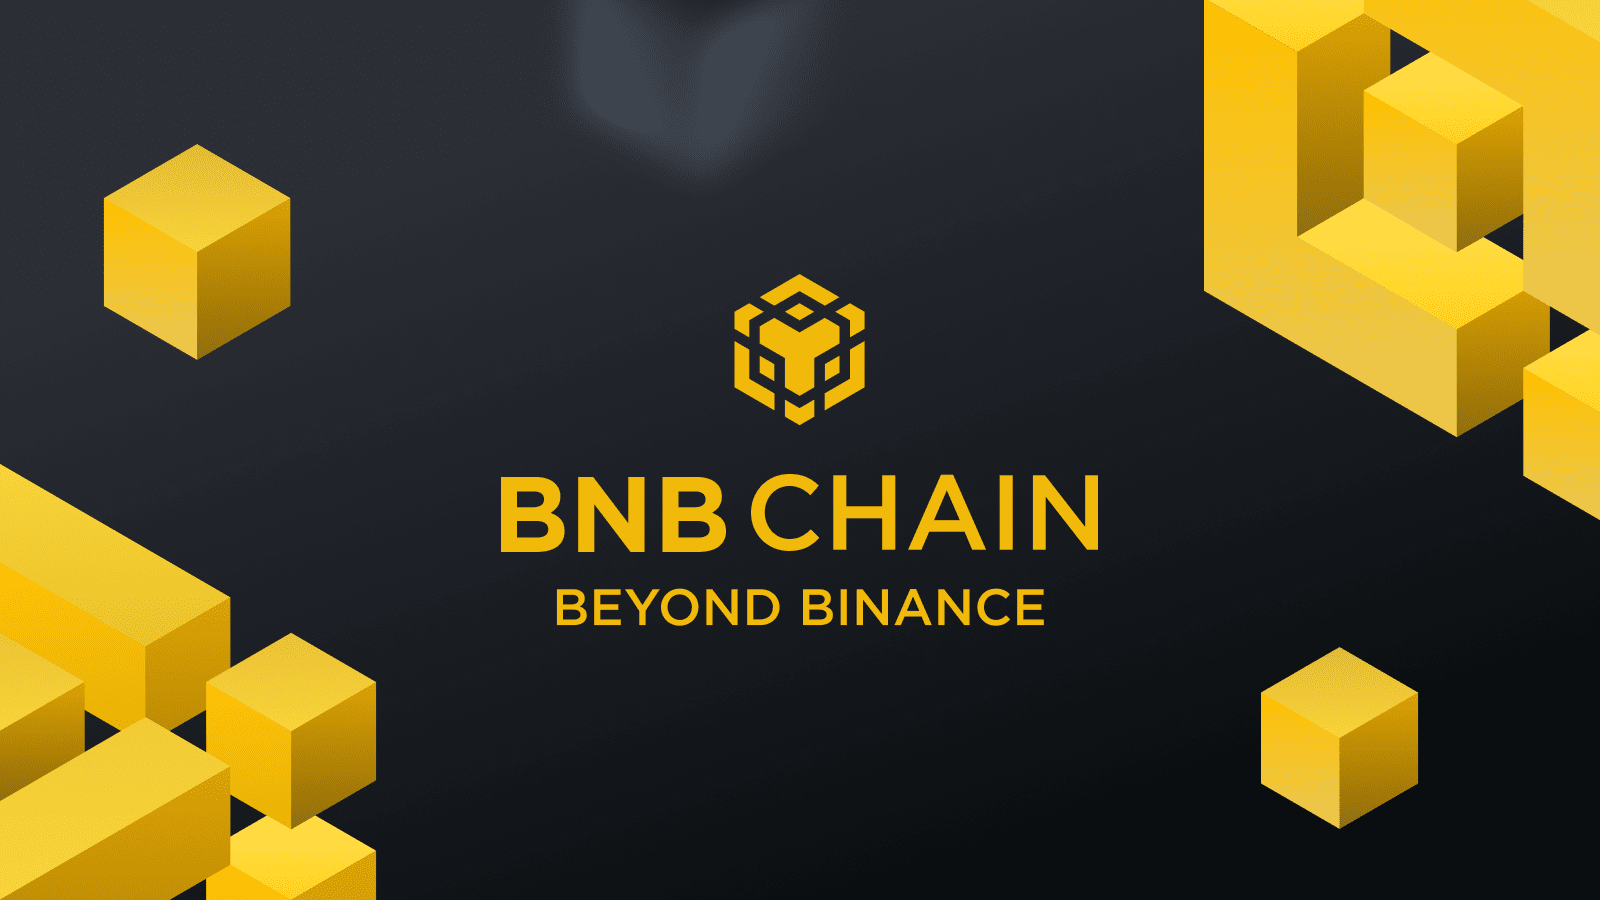 bnb chain beyond binance